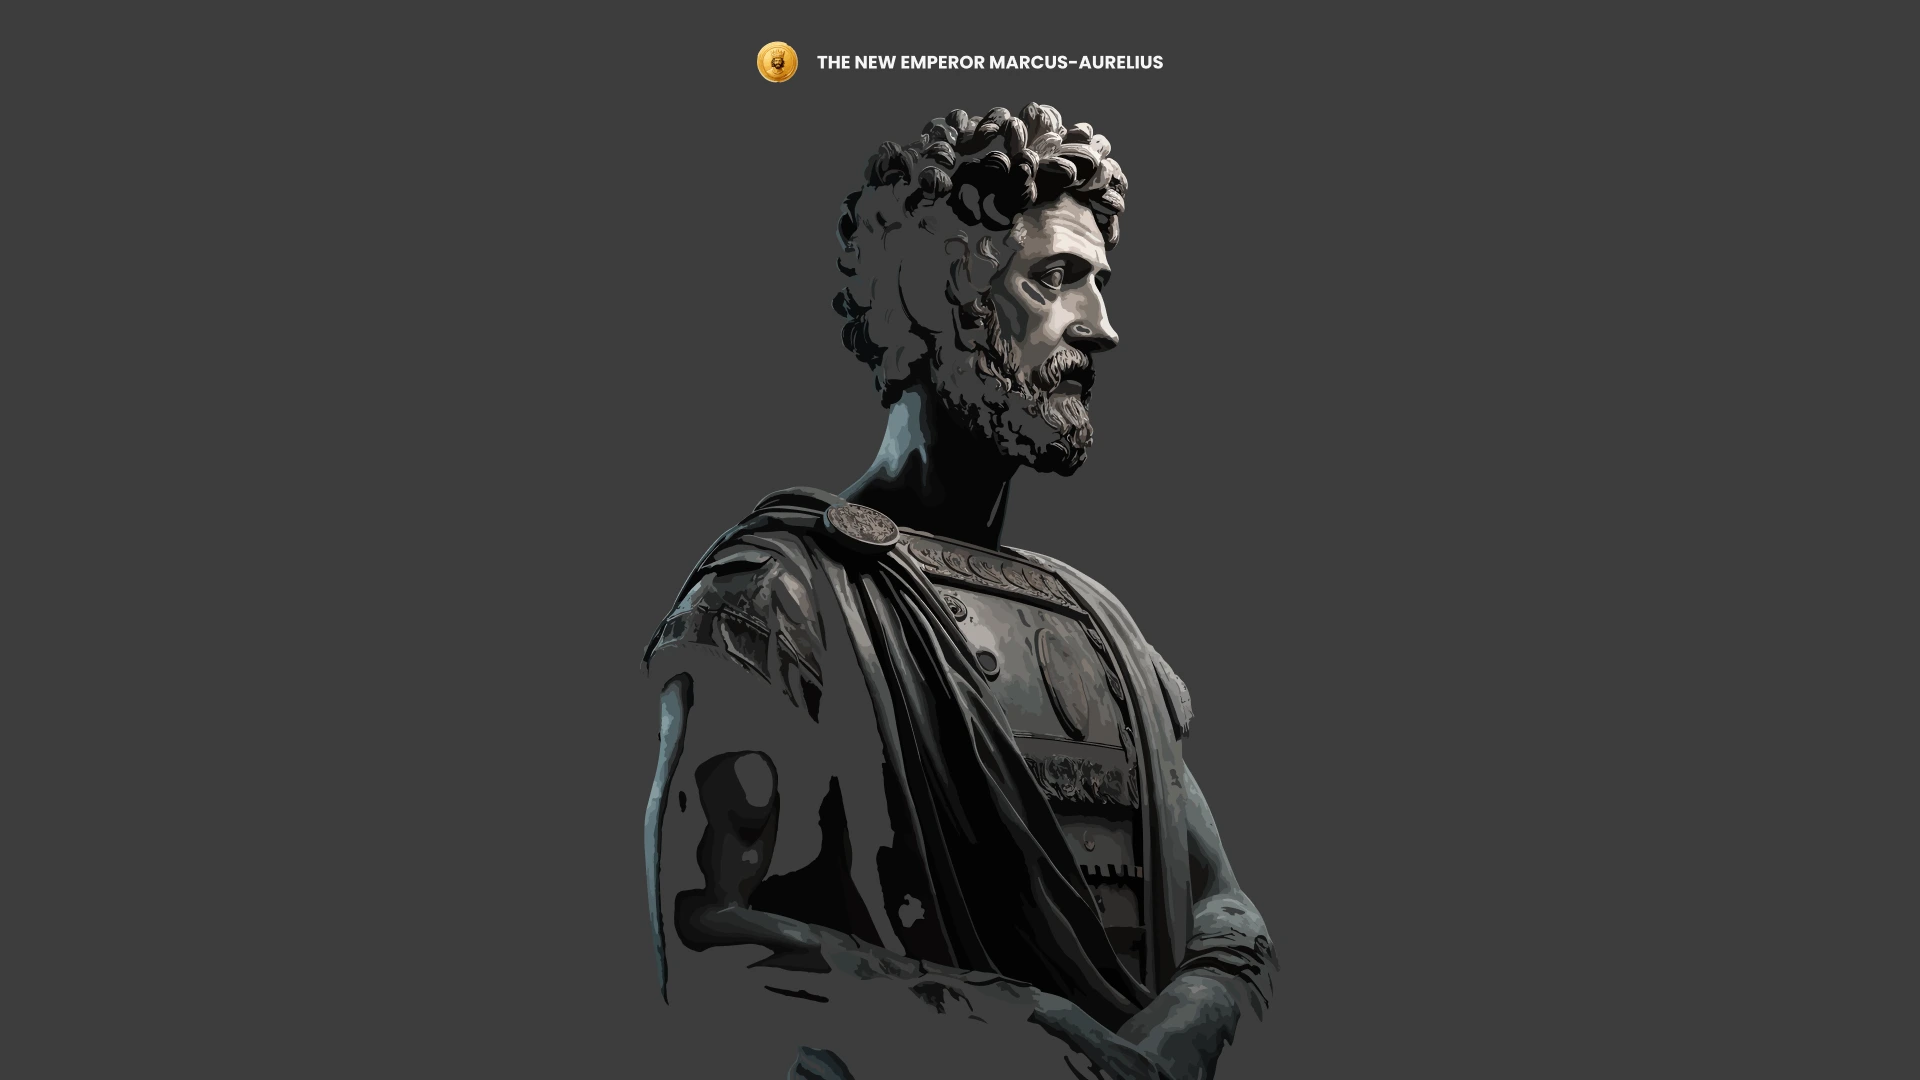 The New Emperor Marcus-Aurelius